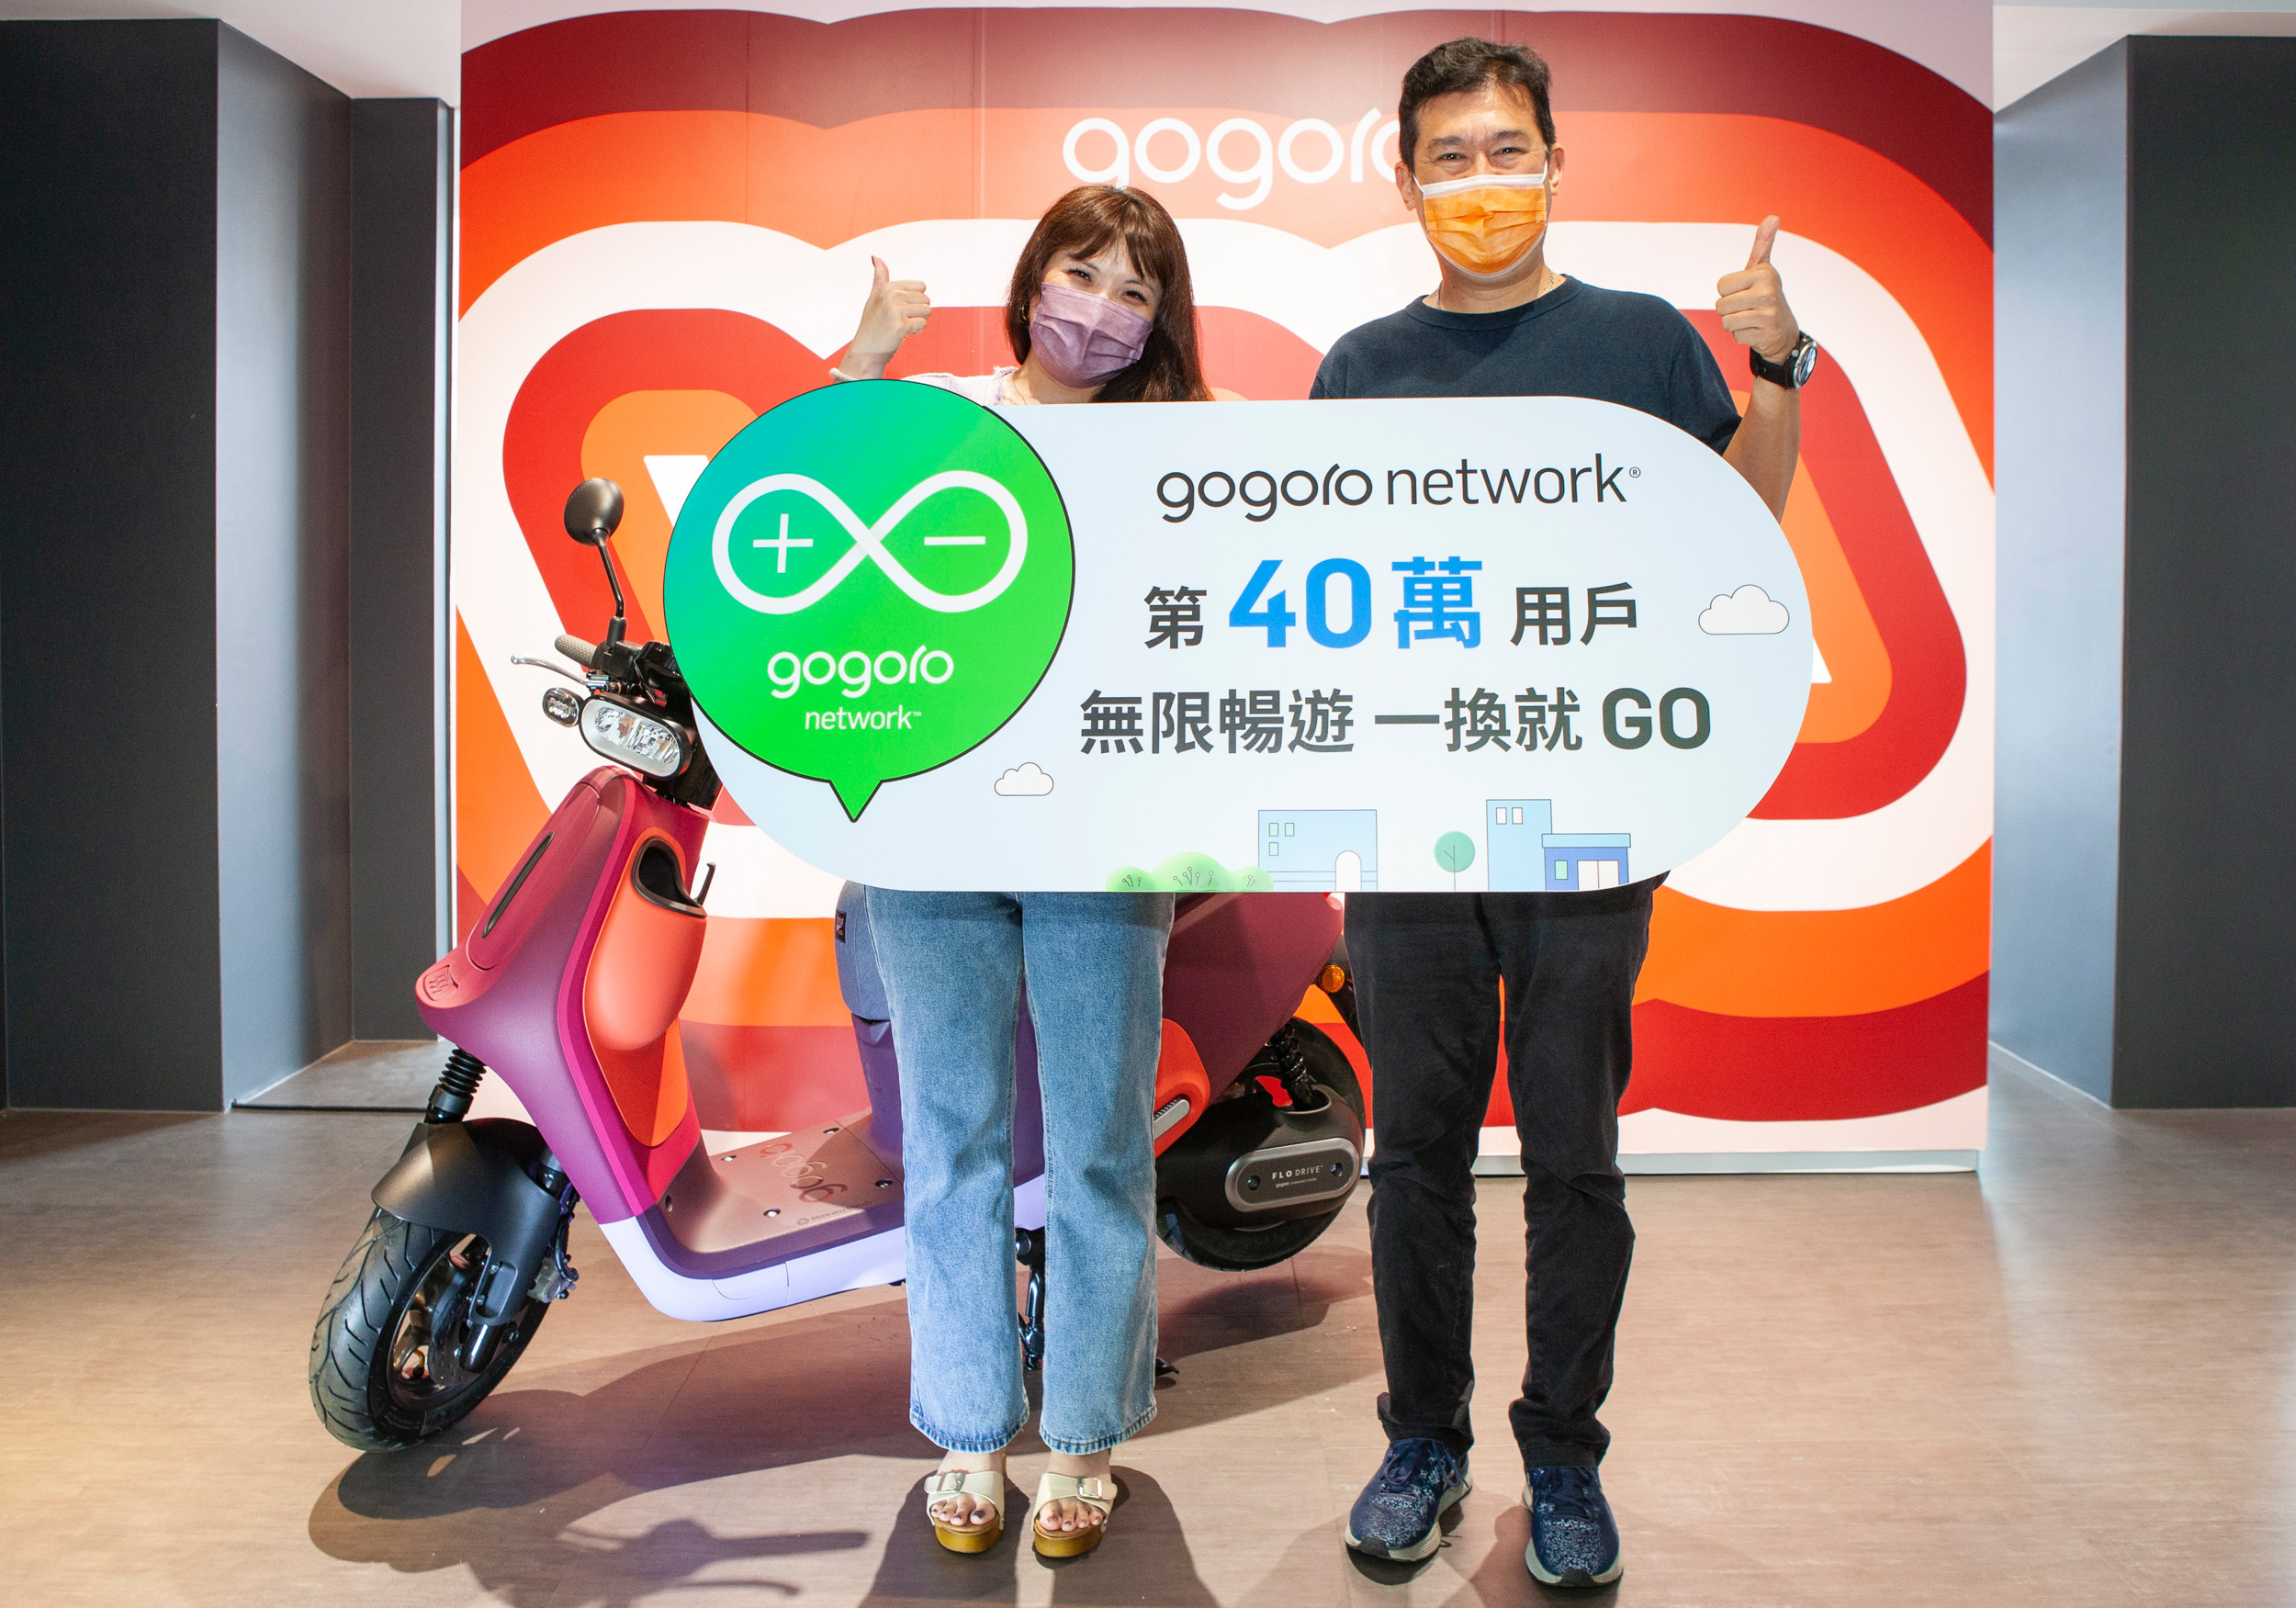 Gogoro Network 第 40 萬用戶誕生，獨享「年年 $0 元騎到飽」終身免繳電池資費。